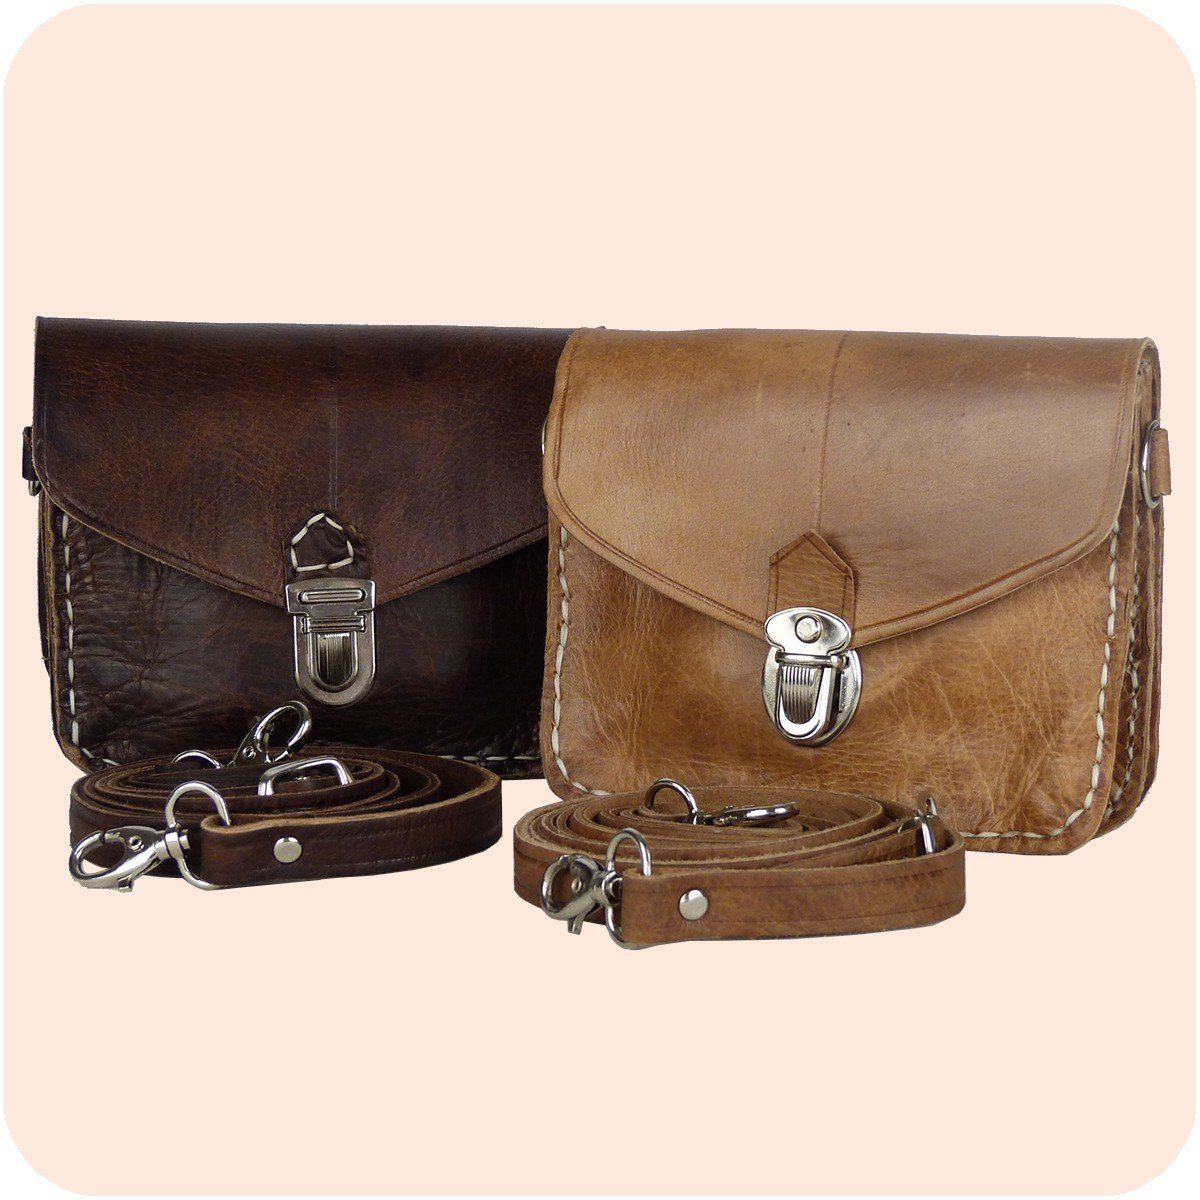 aus - tragbar Handtasche Hellbraun SIMANDRA Leder Handtasche & Schultertasche Tanger Gürteltasche 12x16cm als Echtleder